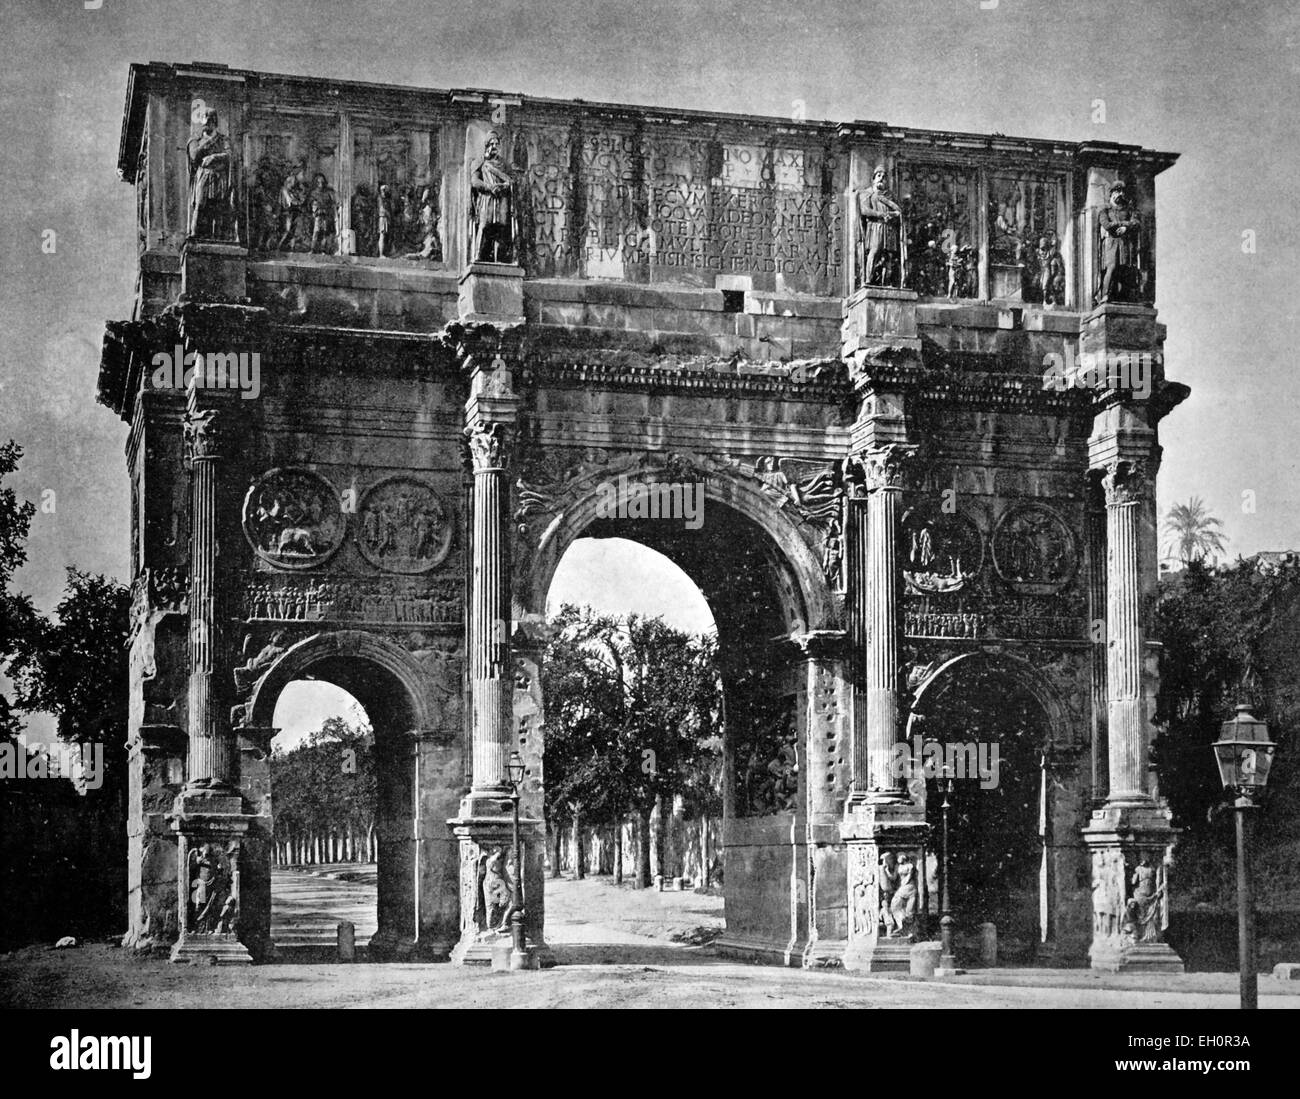 Début d'Autotype l'Arc de Constantin, Rome, Latium, Italie, photographie historique, 1884 Banque D'Images